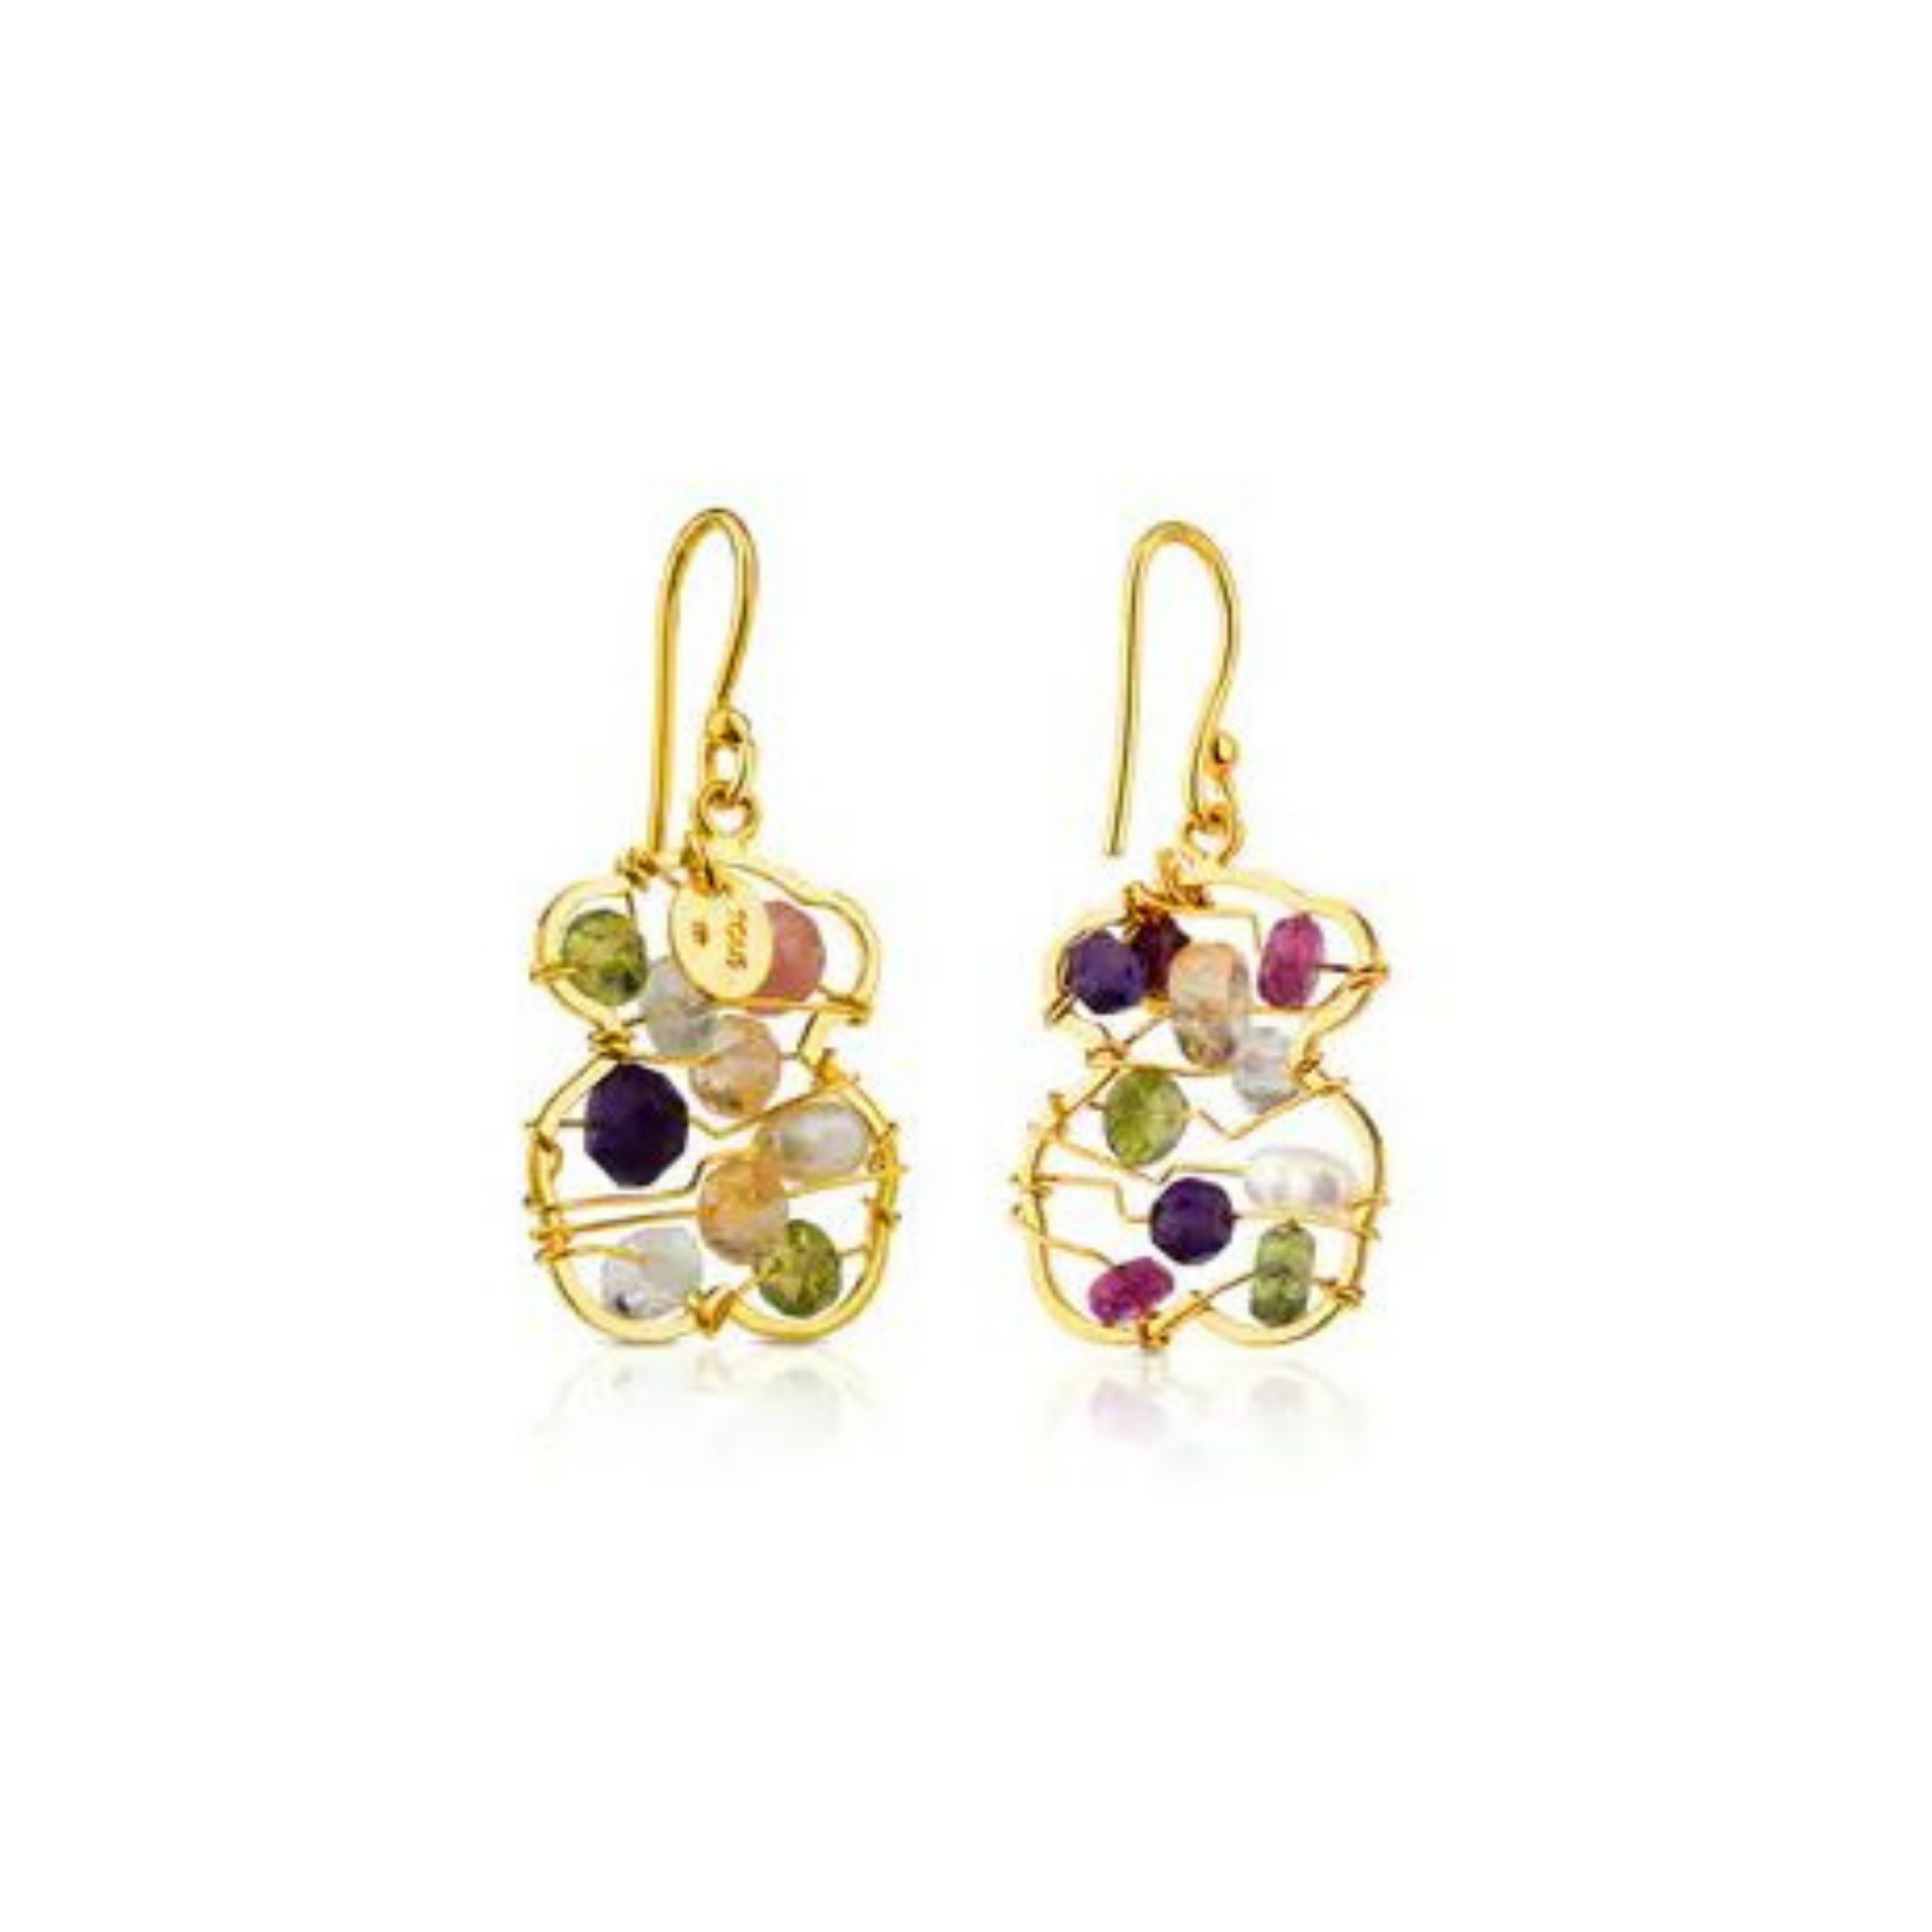 Dolls Gold Earrings - Alaska Jewels TOUS Sweet Monarch